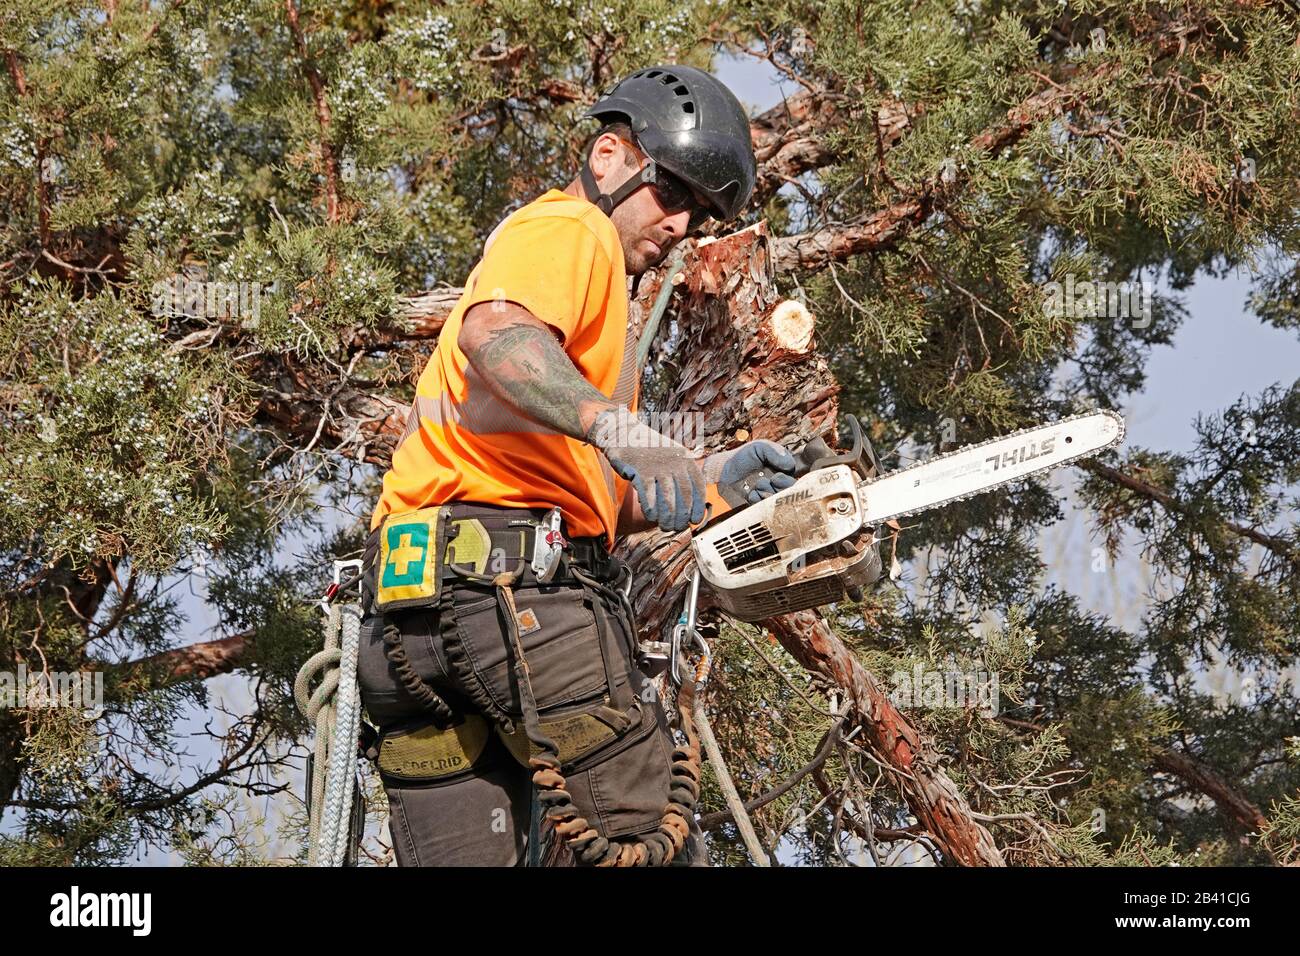 Un podador de árboles que trabaja para un servicio de remoción de árboles utiliza una sierra de cadena para cortar este gran árbol de enebro occidental en una casa residencial en Bend, Oregon. Foto de stock